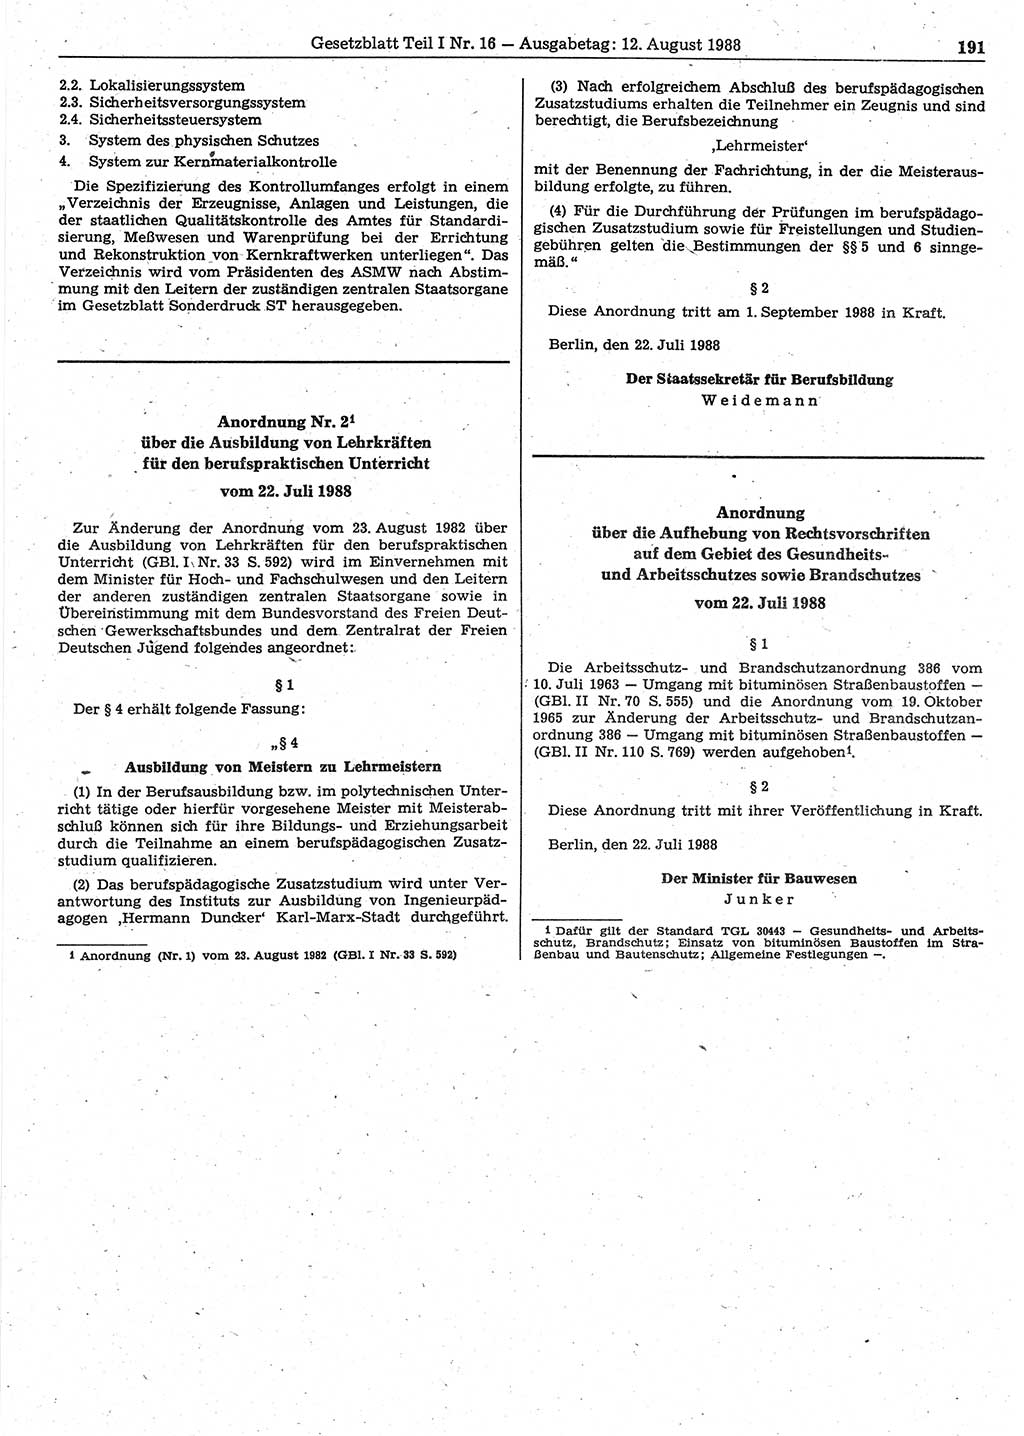 Gesetzblatt (GBl.) der Deutschen Demokratischen Republik (DDR) Teil Ⅰ 1988, Seite 191 (GBl. DDR Ⅰ 1988, S. 191)